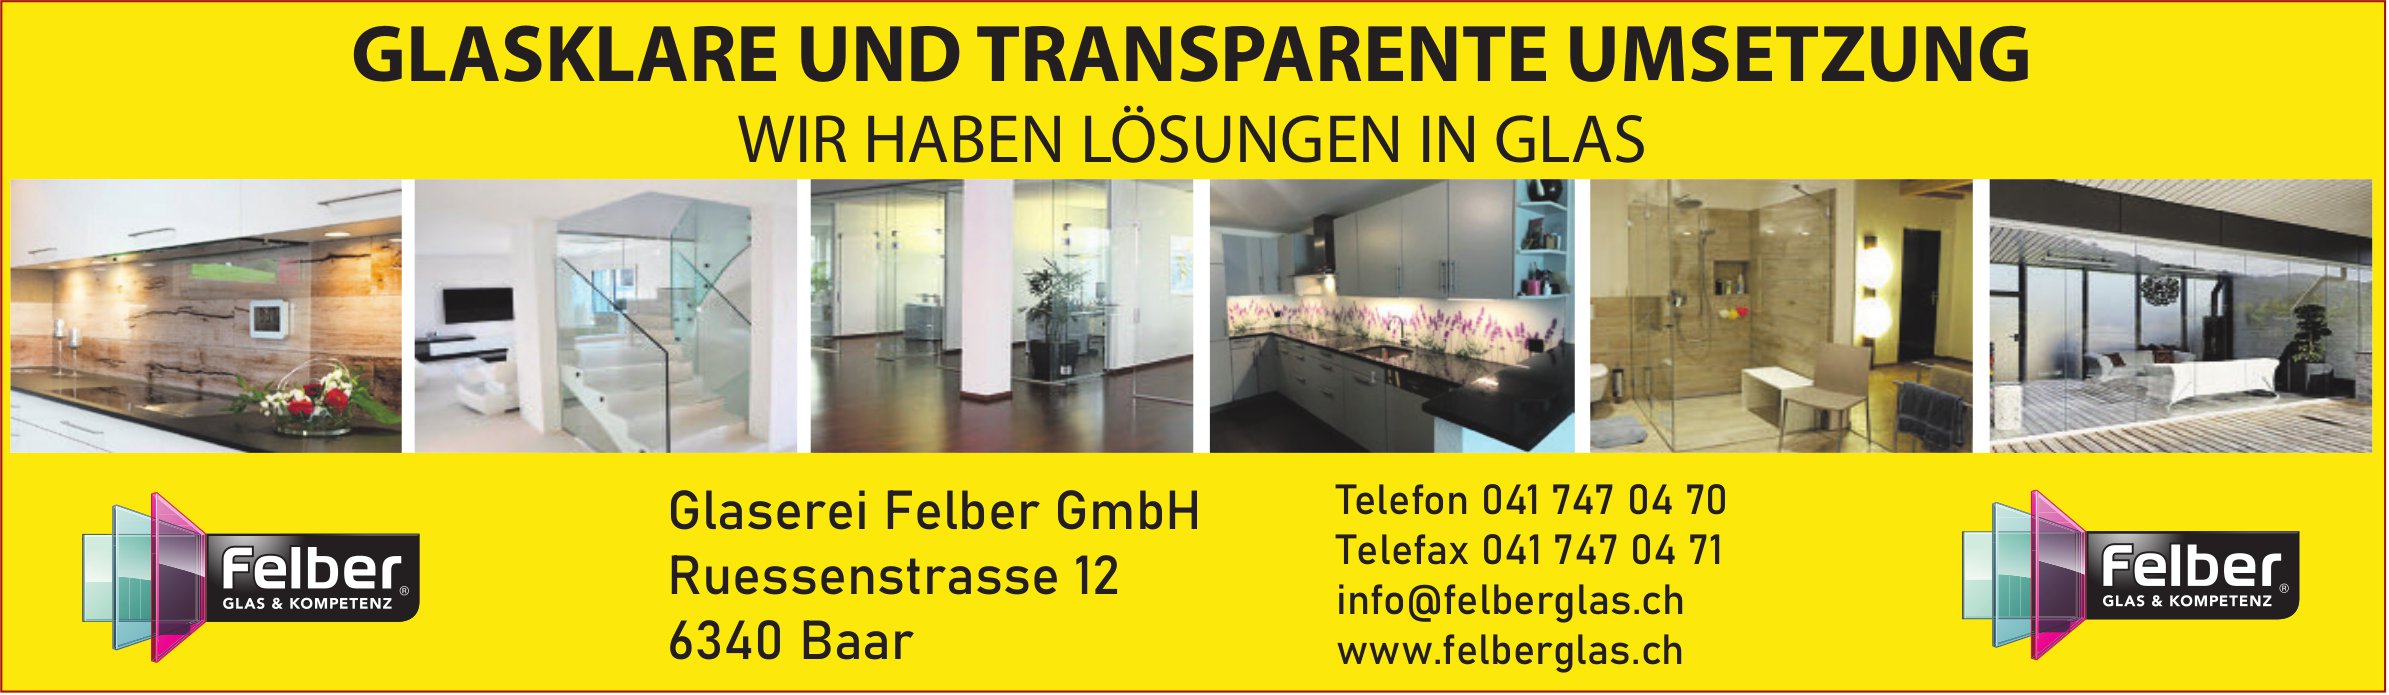 Glaserei Felber GmbH, Baar - Glasklare und transparente Umsetzung